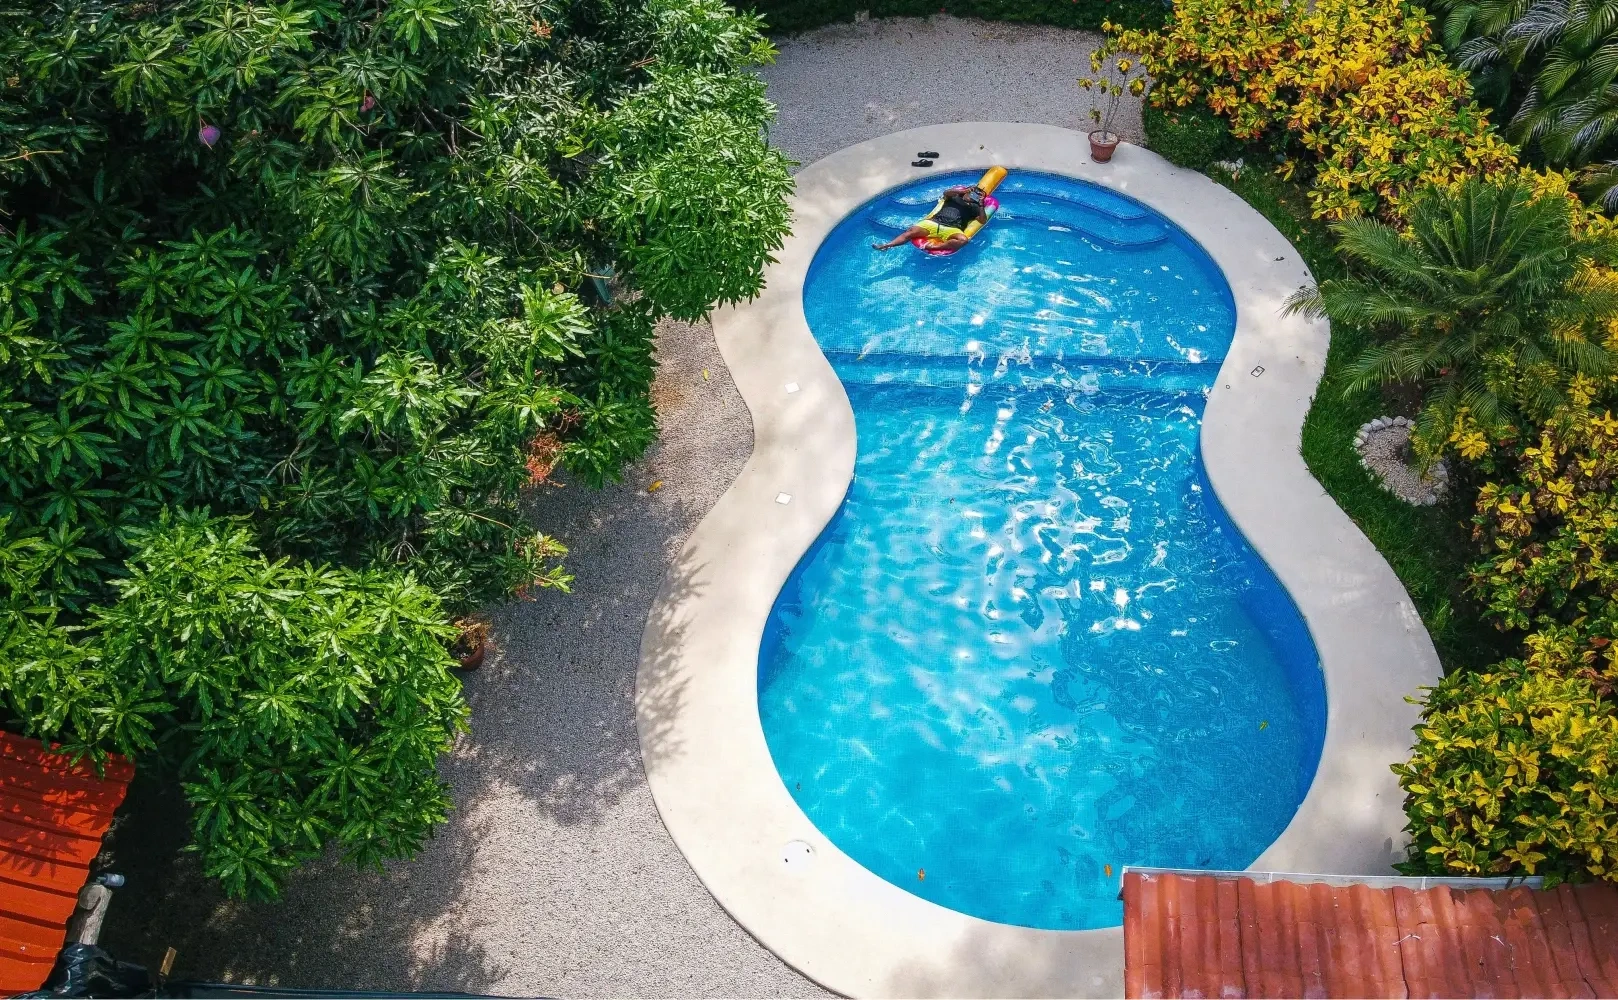 Ny pool til haven - sådan får du penge til den fedeste havepool